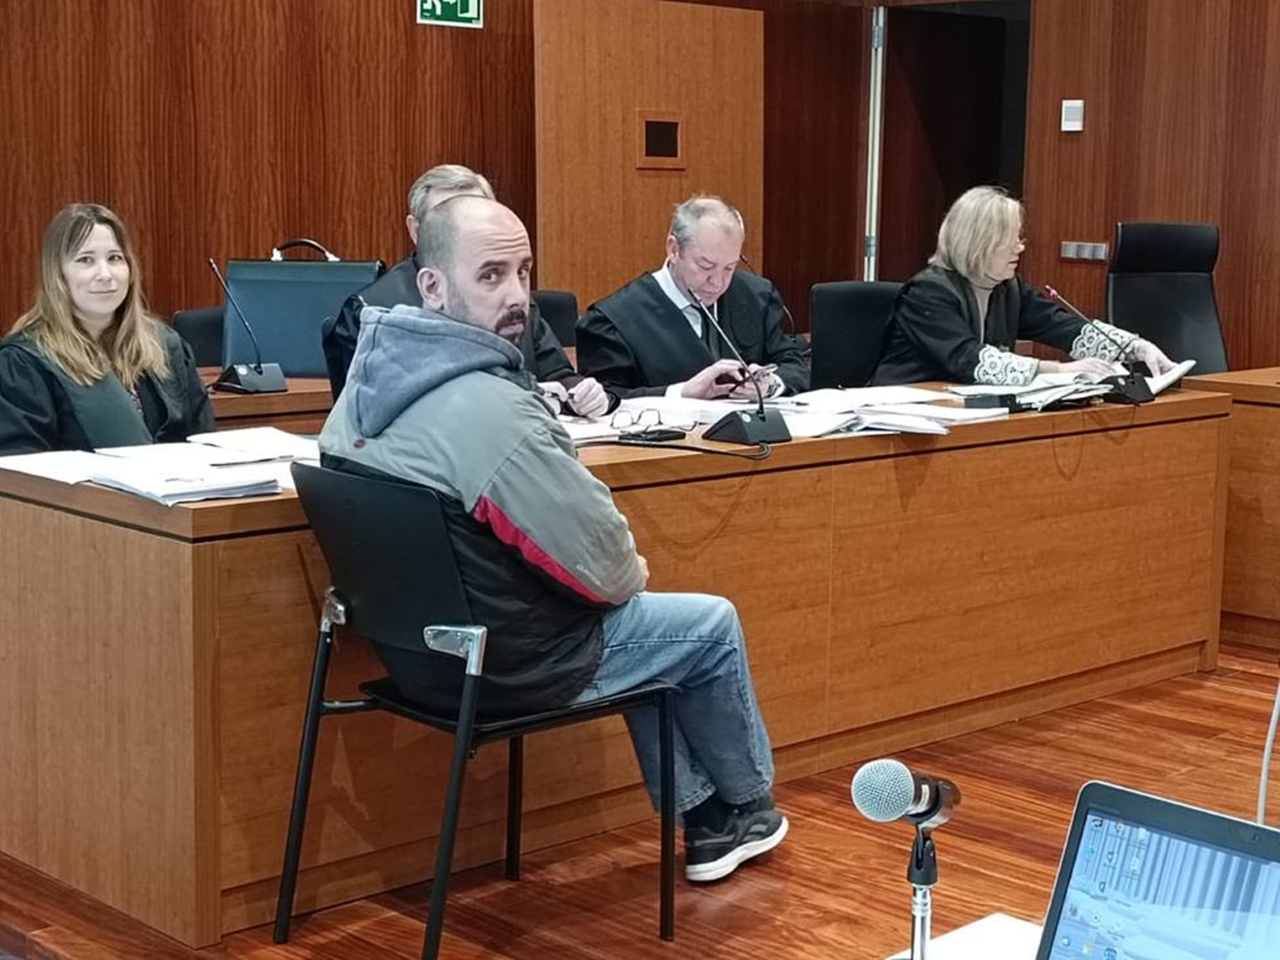 Hctor Lpez Ferrer durante el juicio en la Audiencia de Zaragoza.